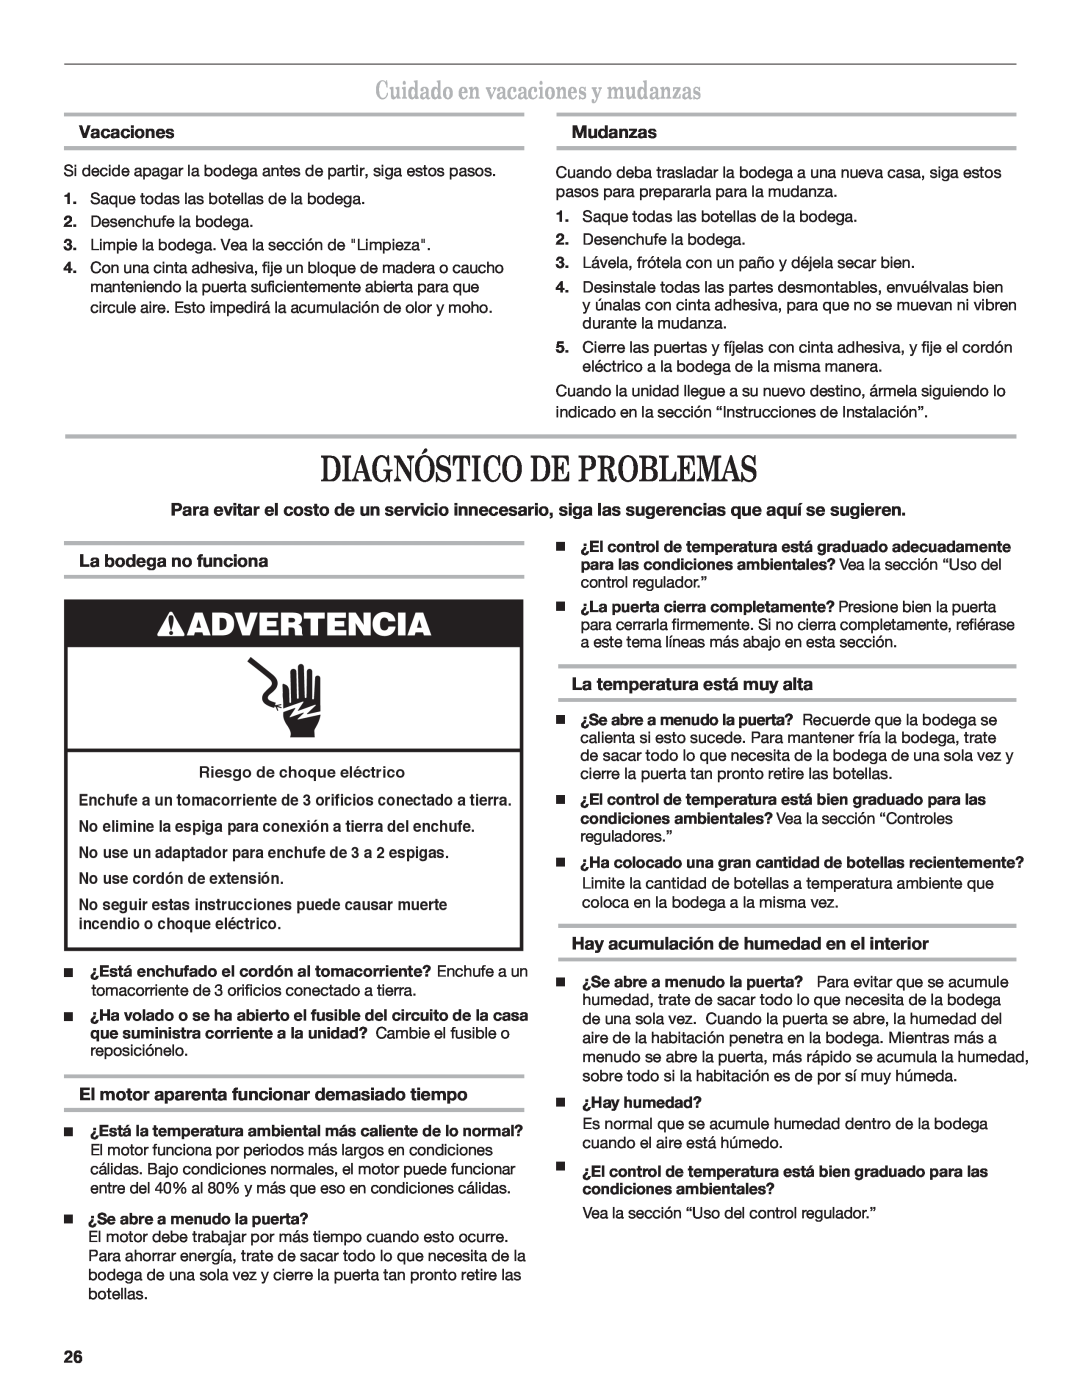 Whirlpool WWC4589BLS manual Diagnóstico De Problemas, Cuidado en vacaciones y mudanzas, Vacaciones, Mudanzas, Advertencia 